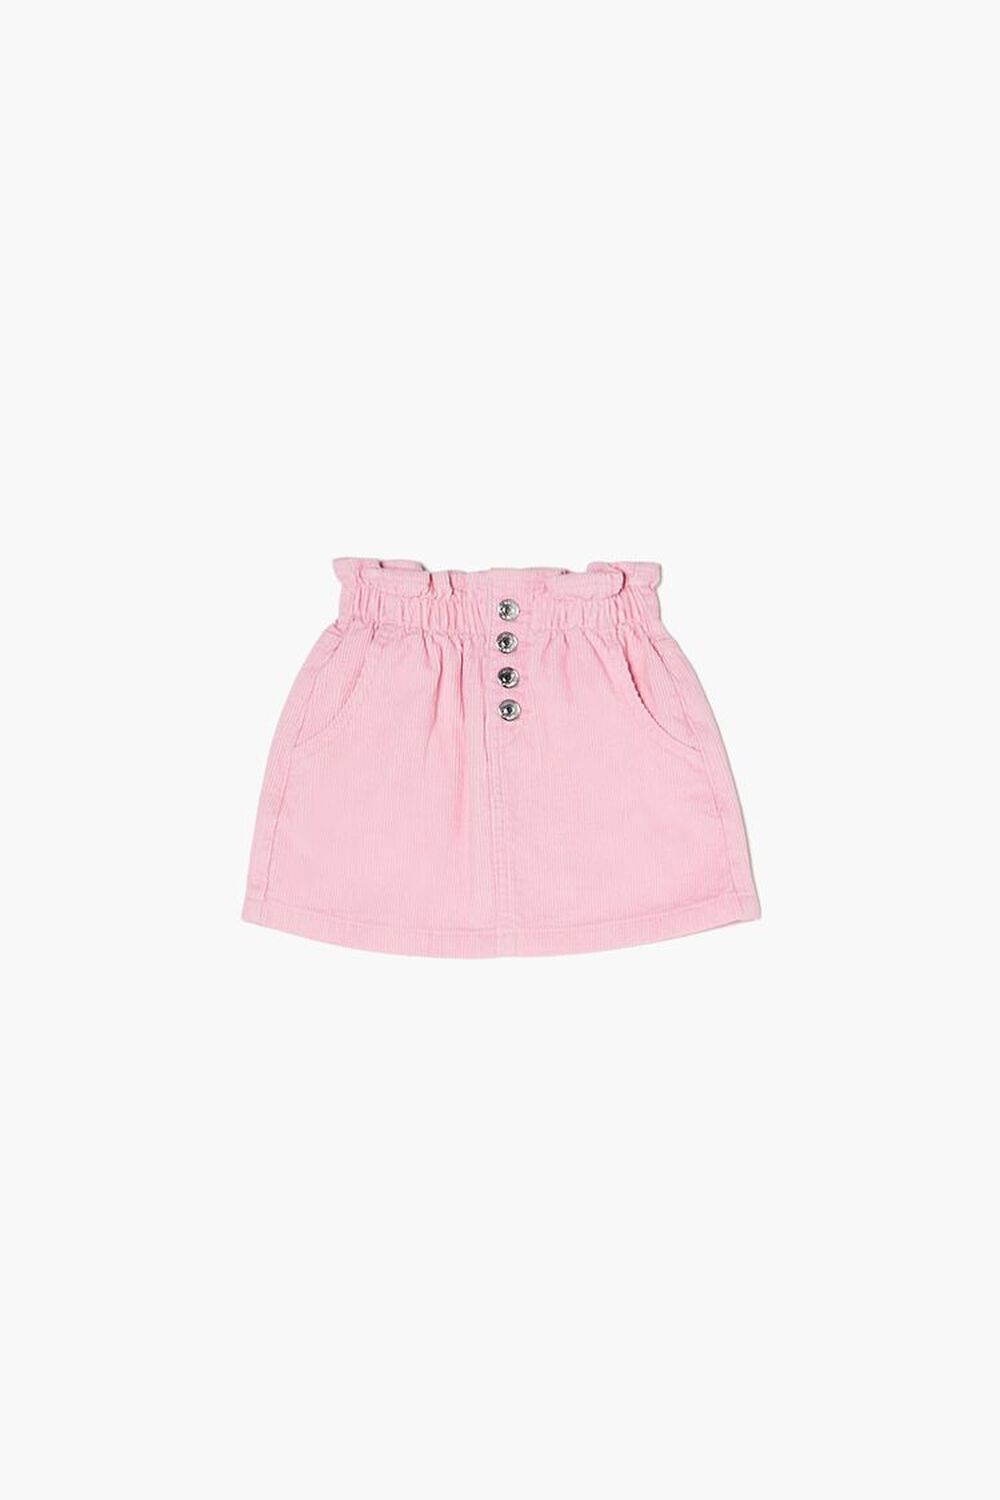 PINK Girls Corduroy Skirt (Kids), image 1